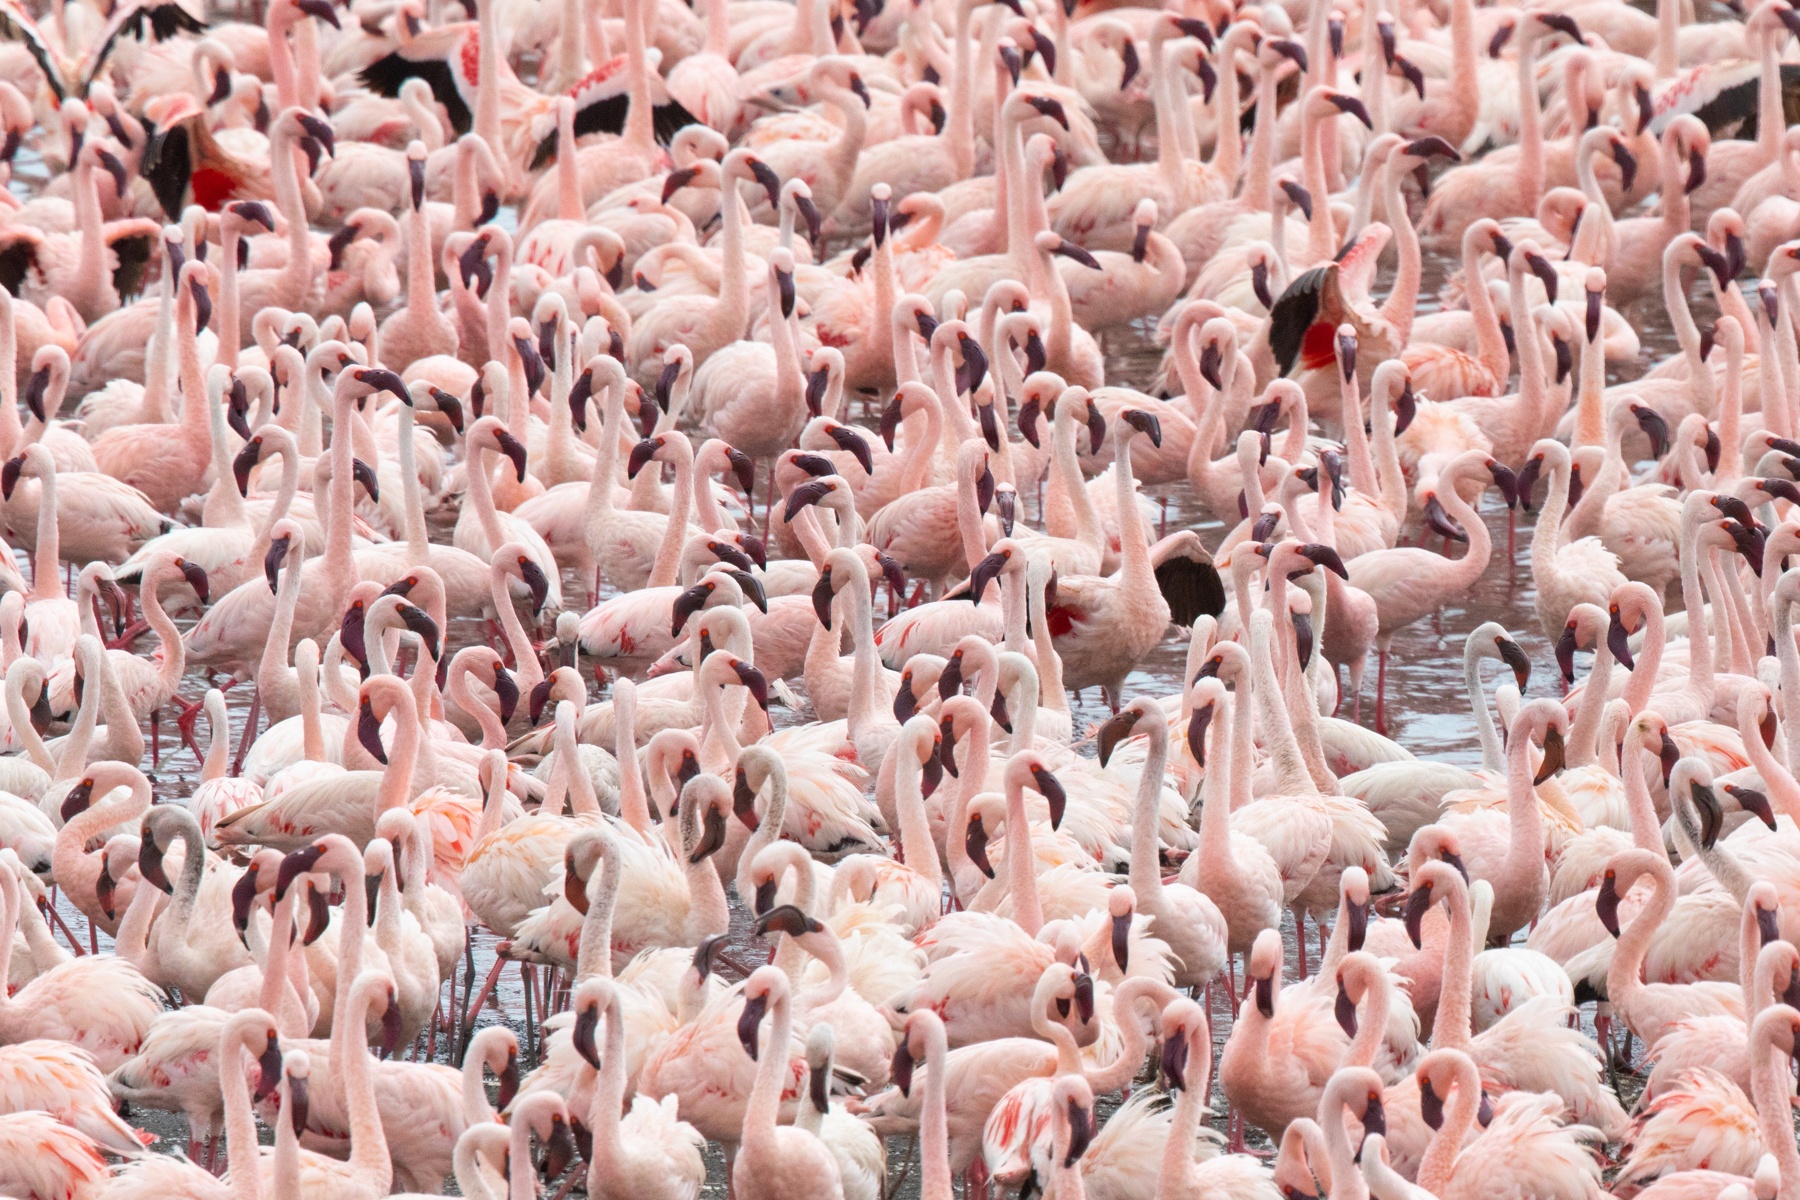 So many flamingos!